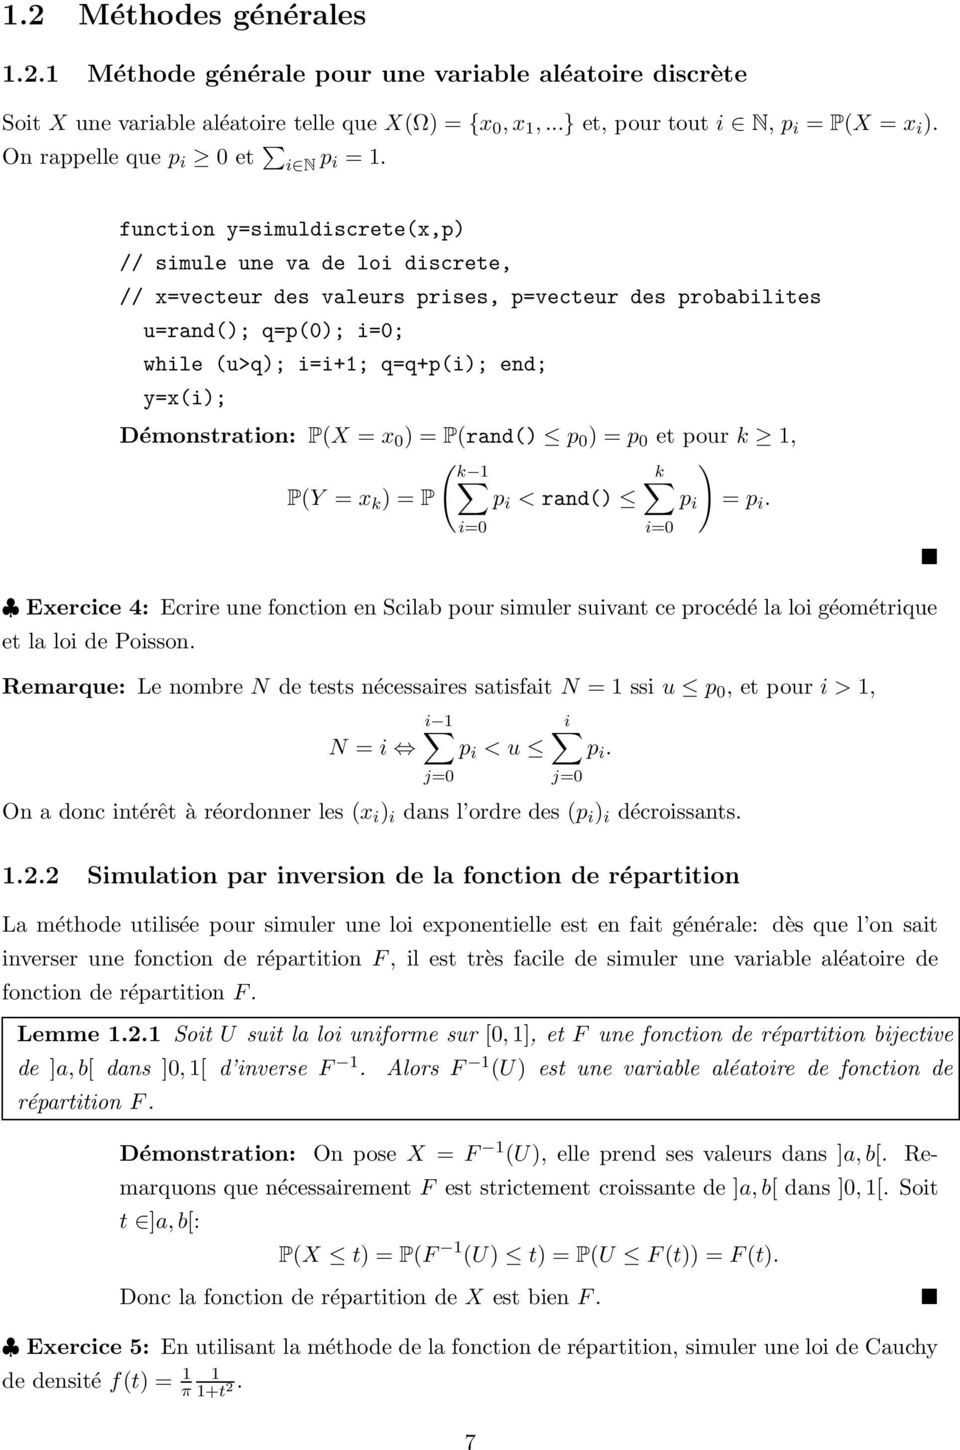 function y=simuldiscretex,p) // simule une va de loi discrete, // x=vecteur des valeurs prises, p=vecteur des probabilites u=rand); q=p); i=; while u>q); i=i+1; q=q+pi); end; y=xi); Démonstration: PX